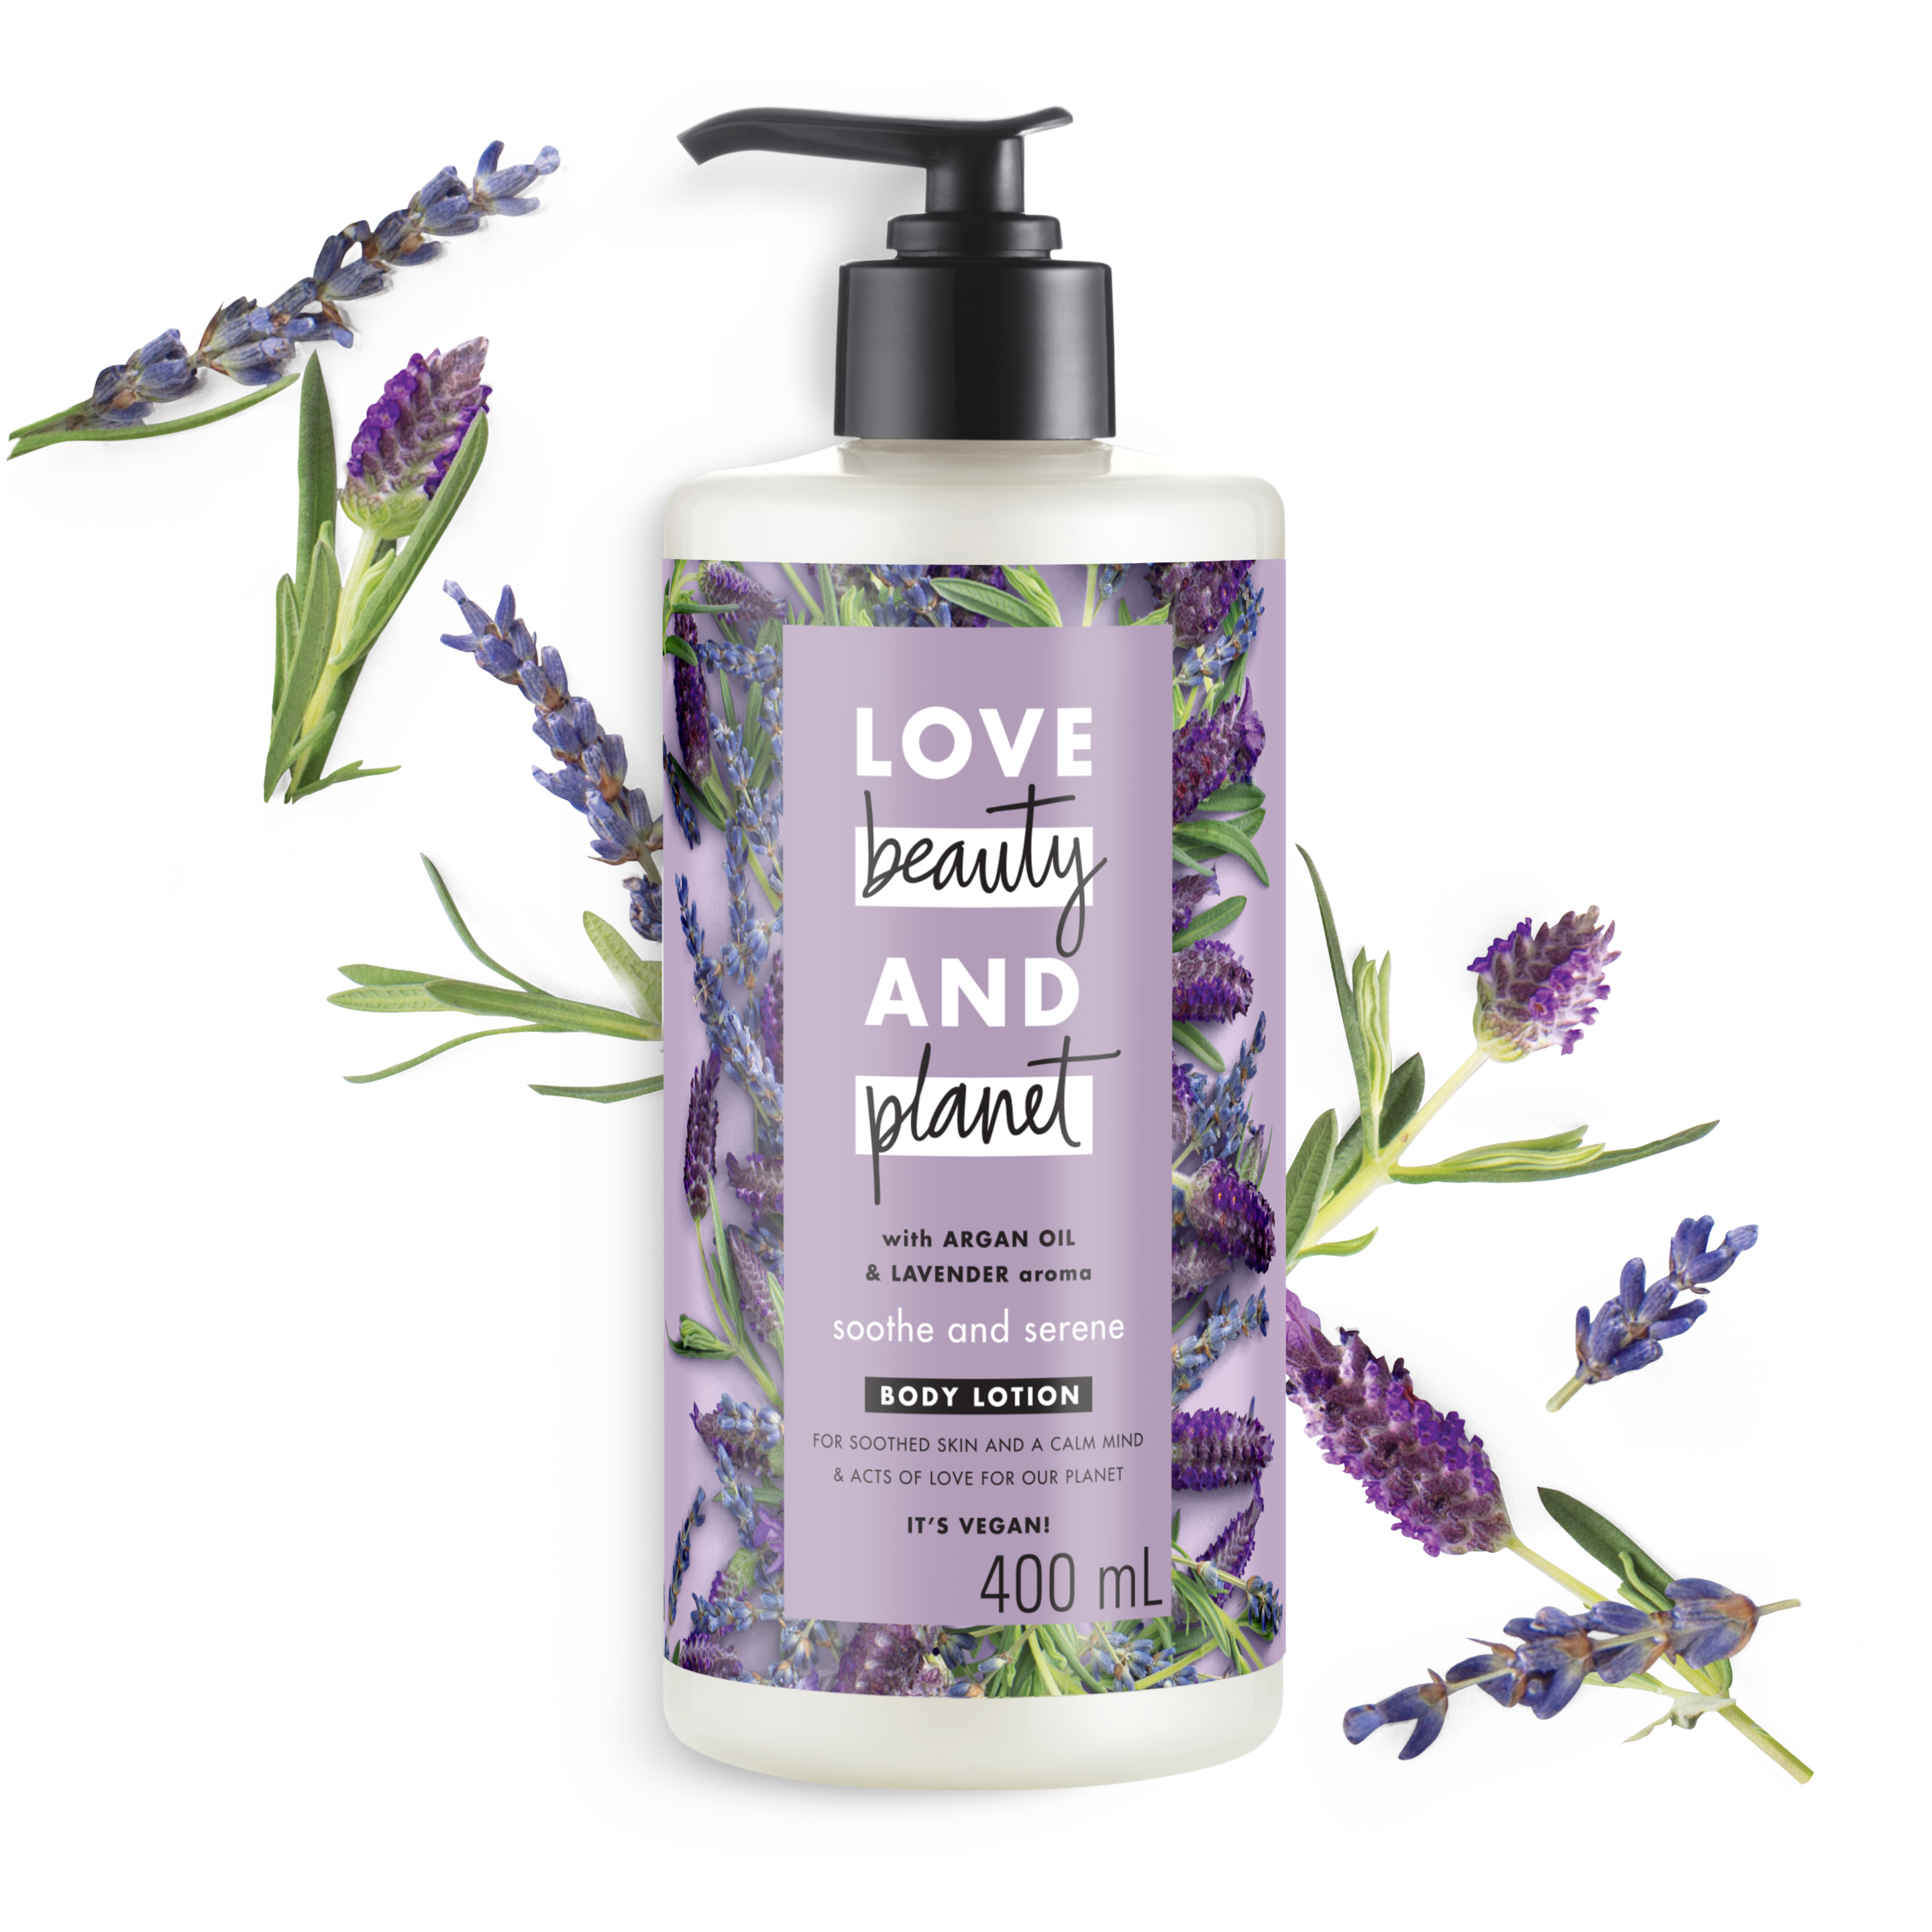 Tampak depan kemasan Love Beauty and Planet Argan Oil & Lavender Body Lotion ukuran 400 ml